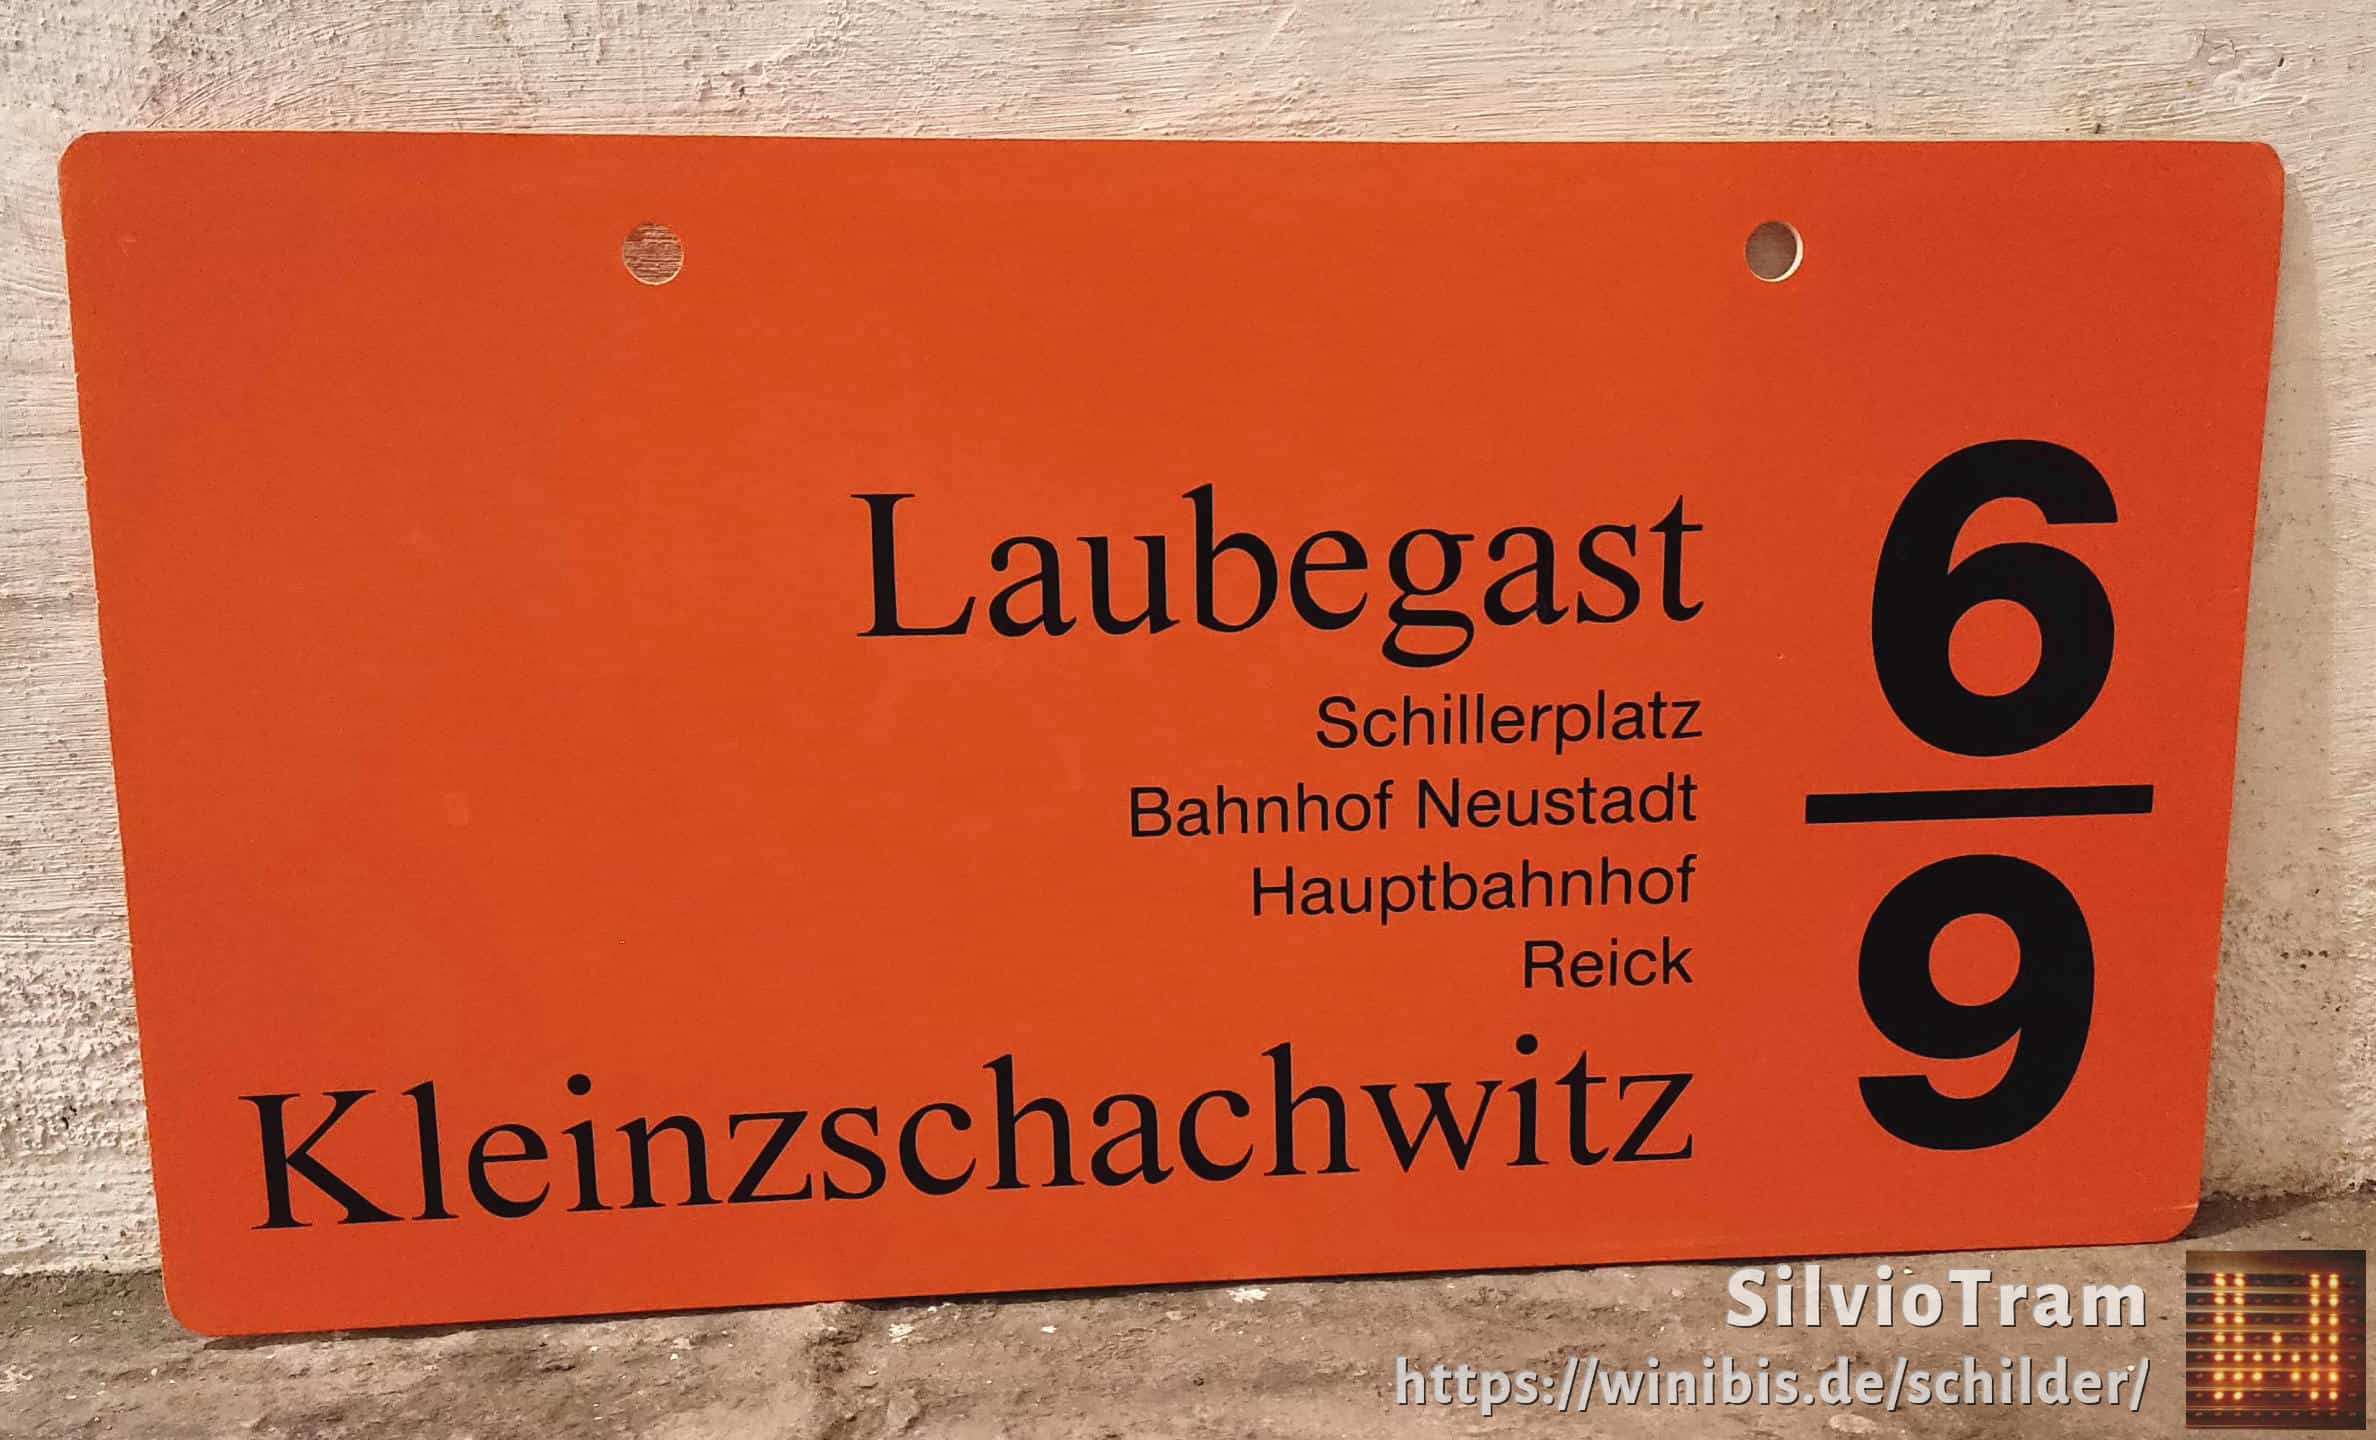 6/9 Laubegast – Kleinzschachwitz #3